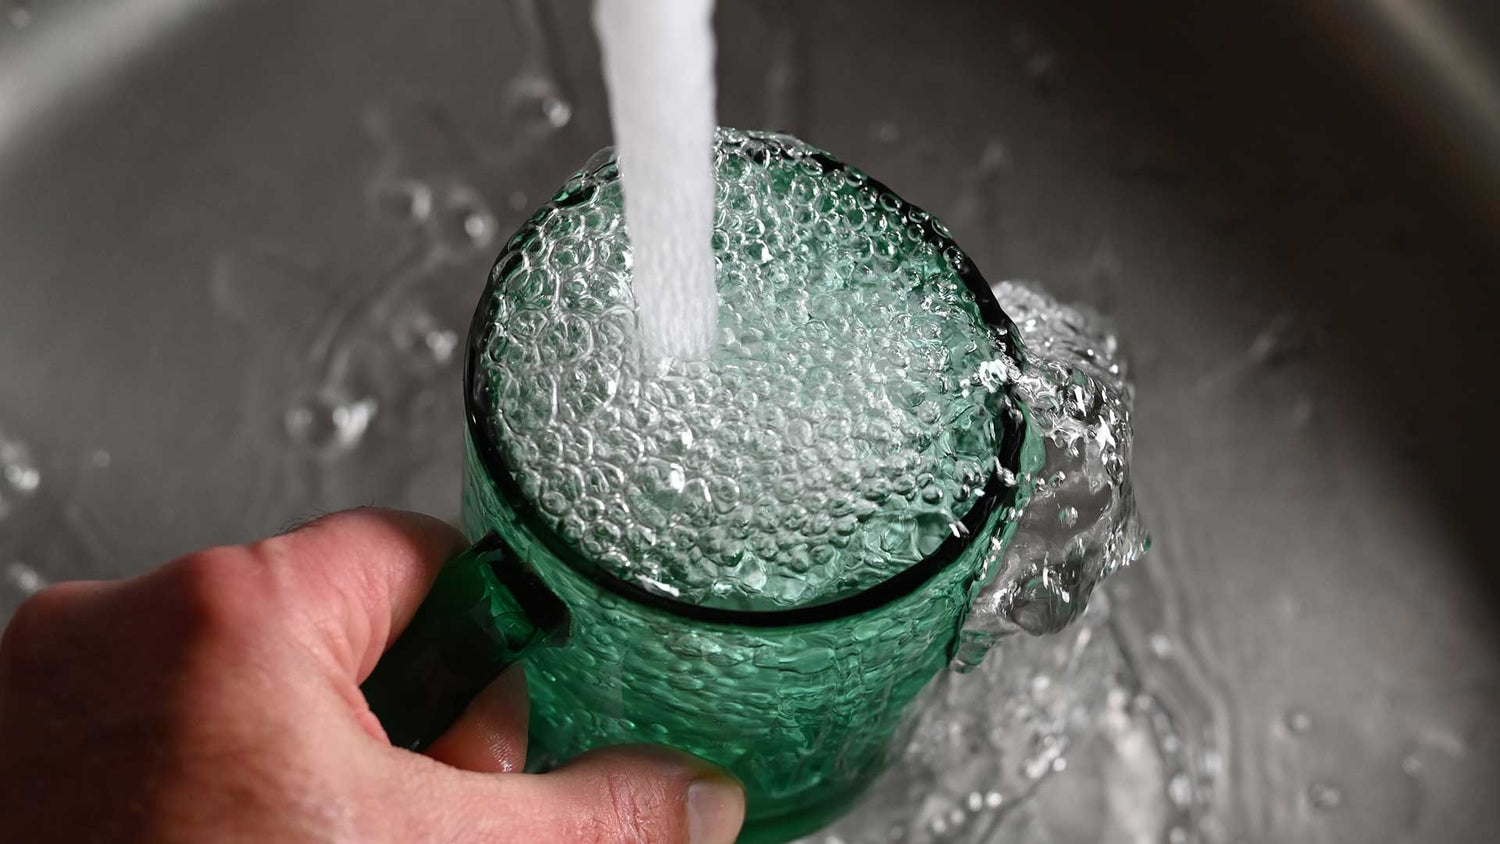 Grünes Glas wird mit Wasser aus dem Wasserhahn gefüllt